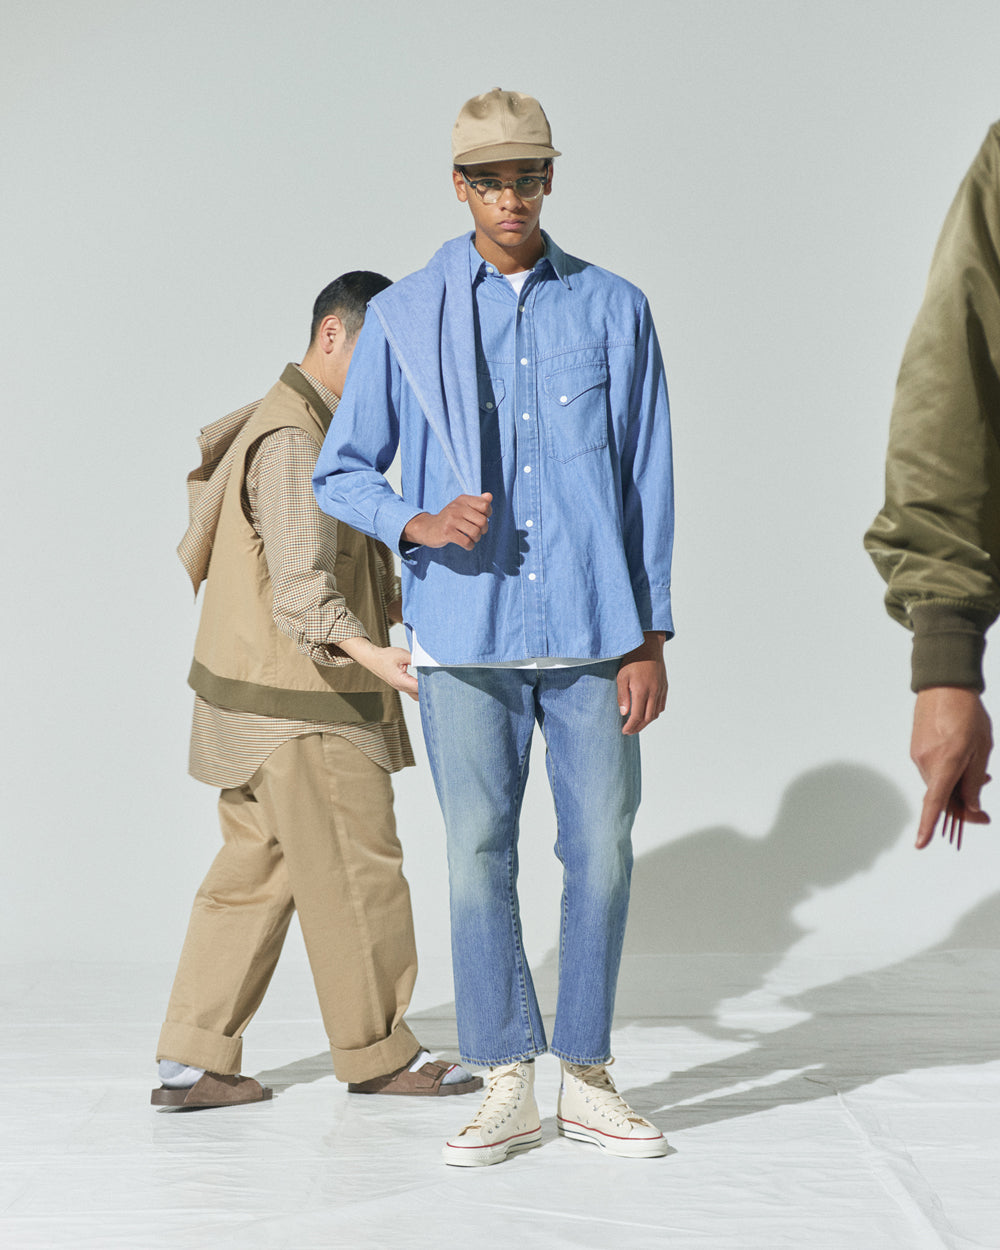 アンライクリーのウェスタンシャツにジーンズのコーディネートを中田慎介氏がモデルにウェスタンシャツを今っぽく着付けているところ